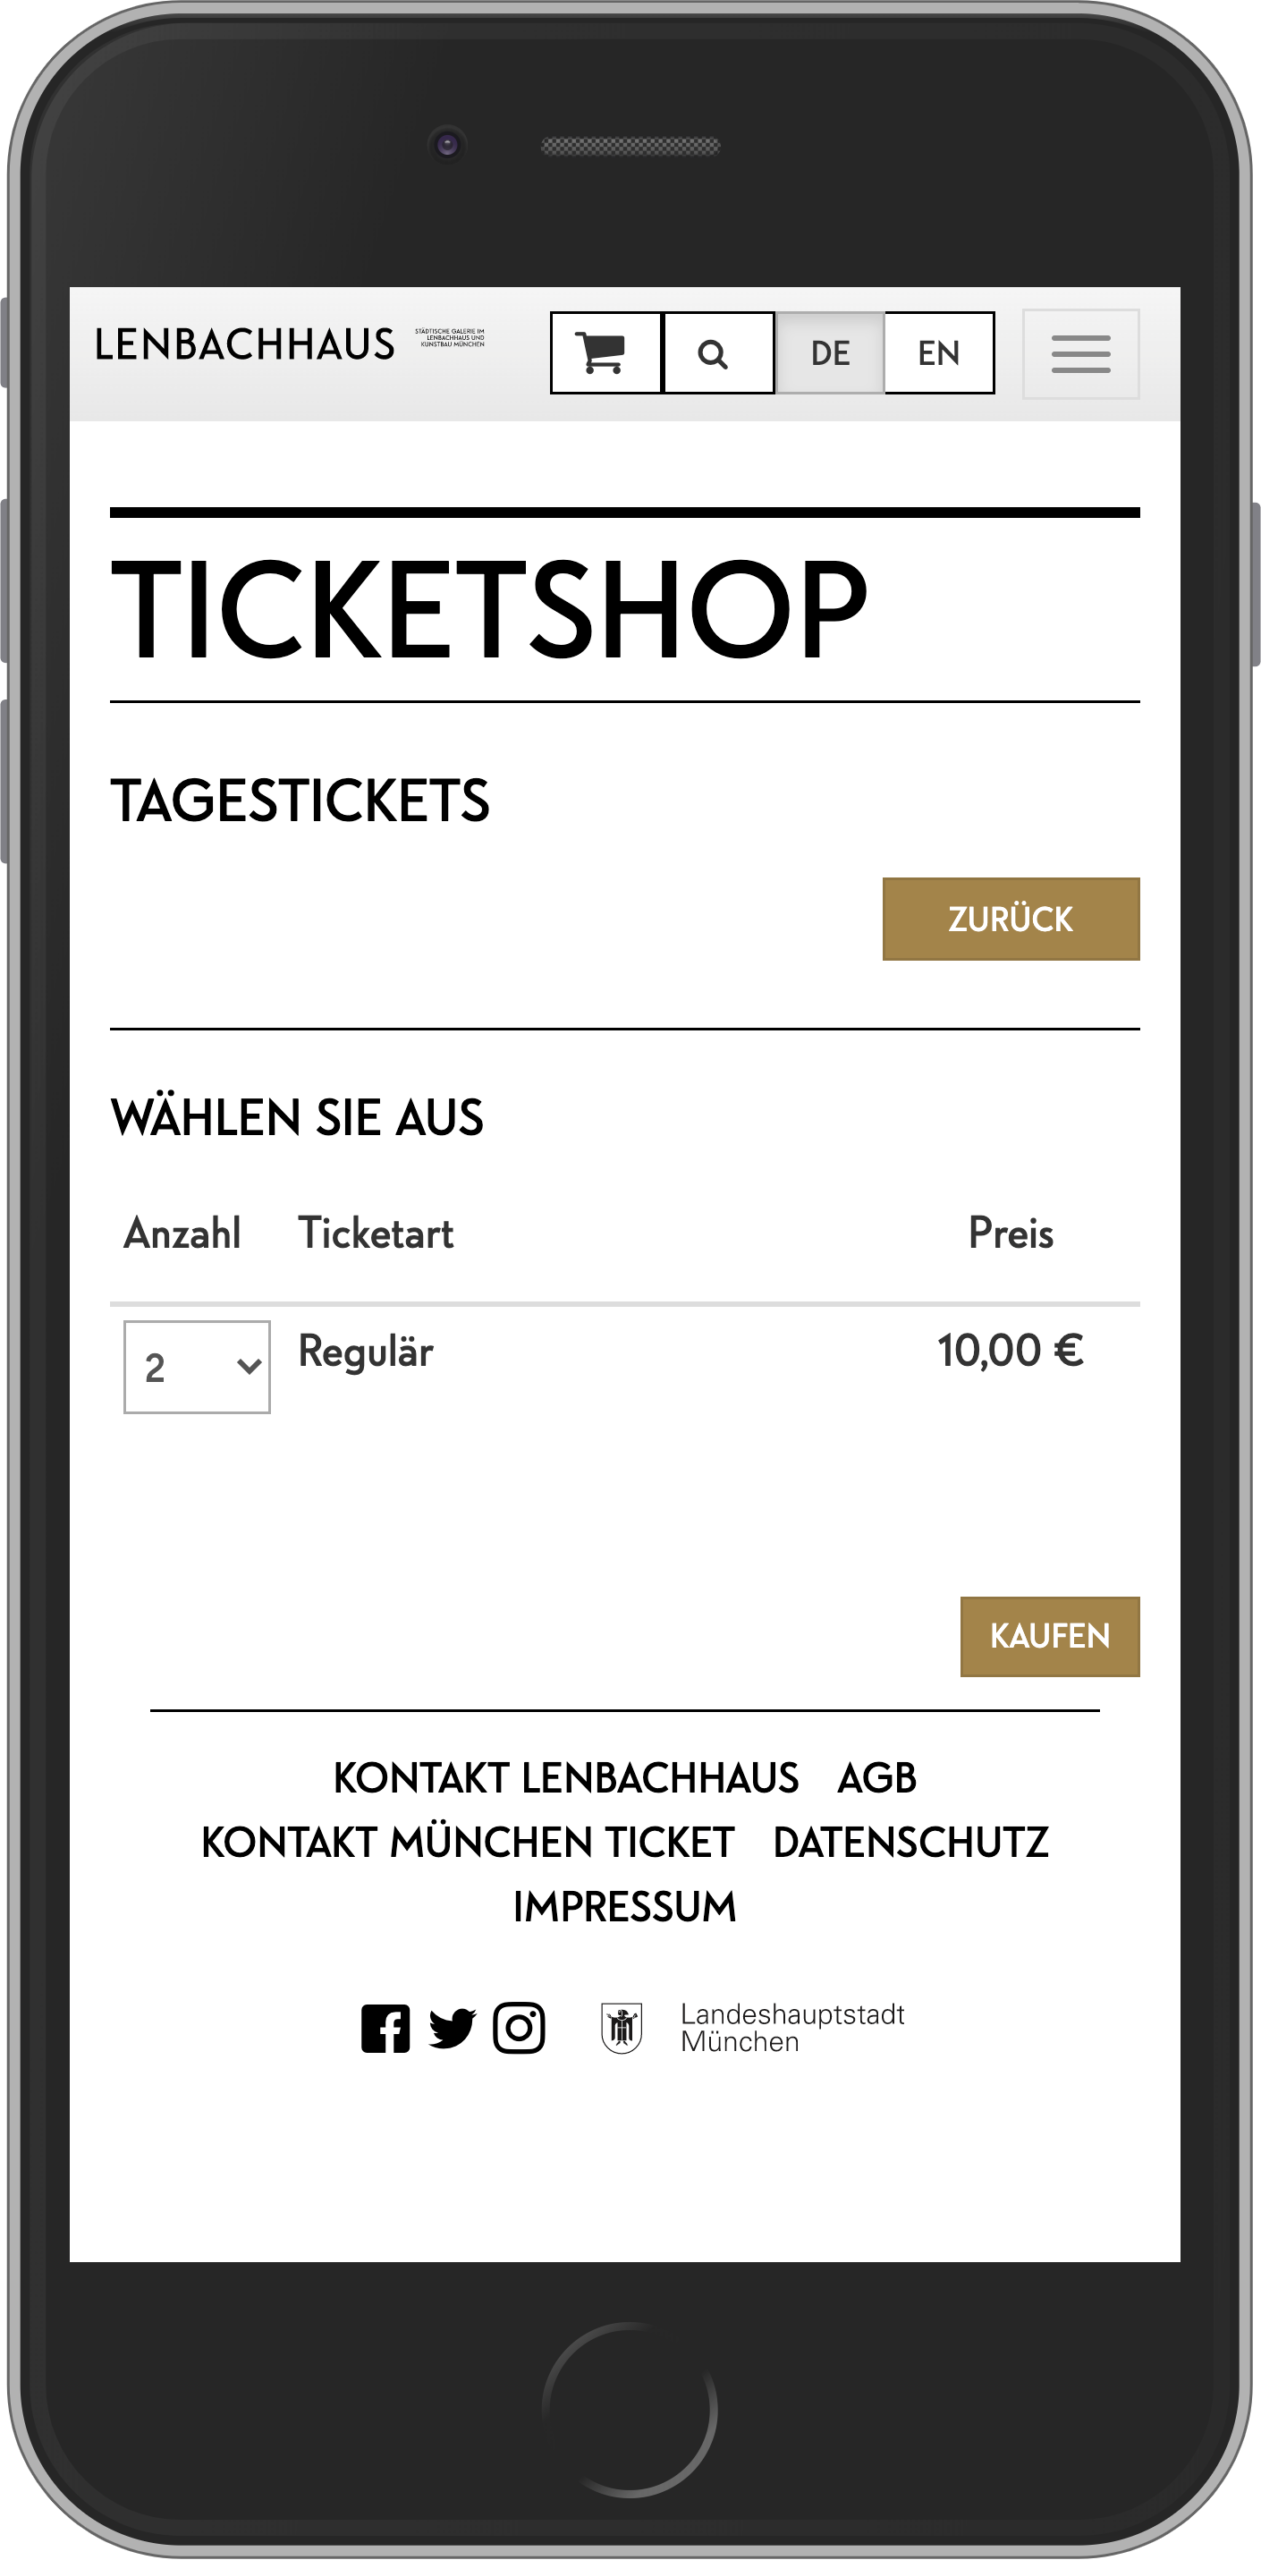 Mobile Ansicht der Ticketauswahl im Ticketkaufvorgang im Online-Shop des Lenbachhaus München